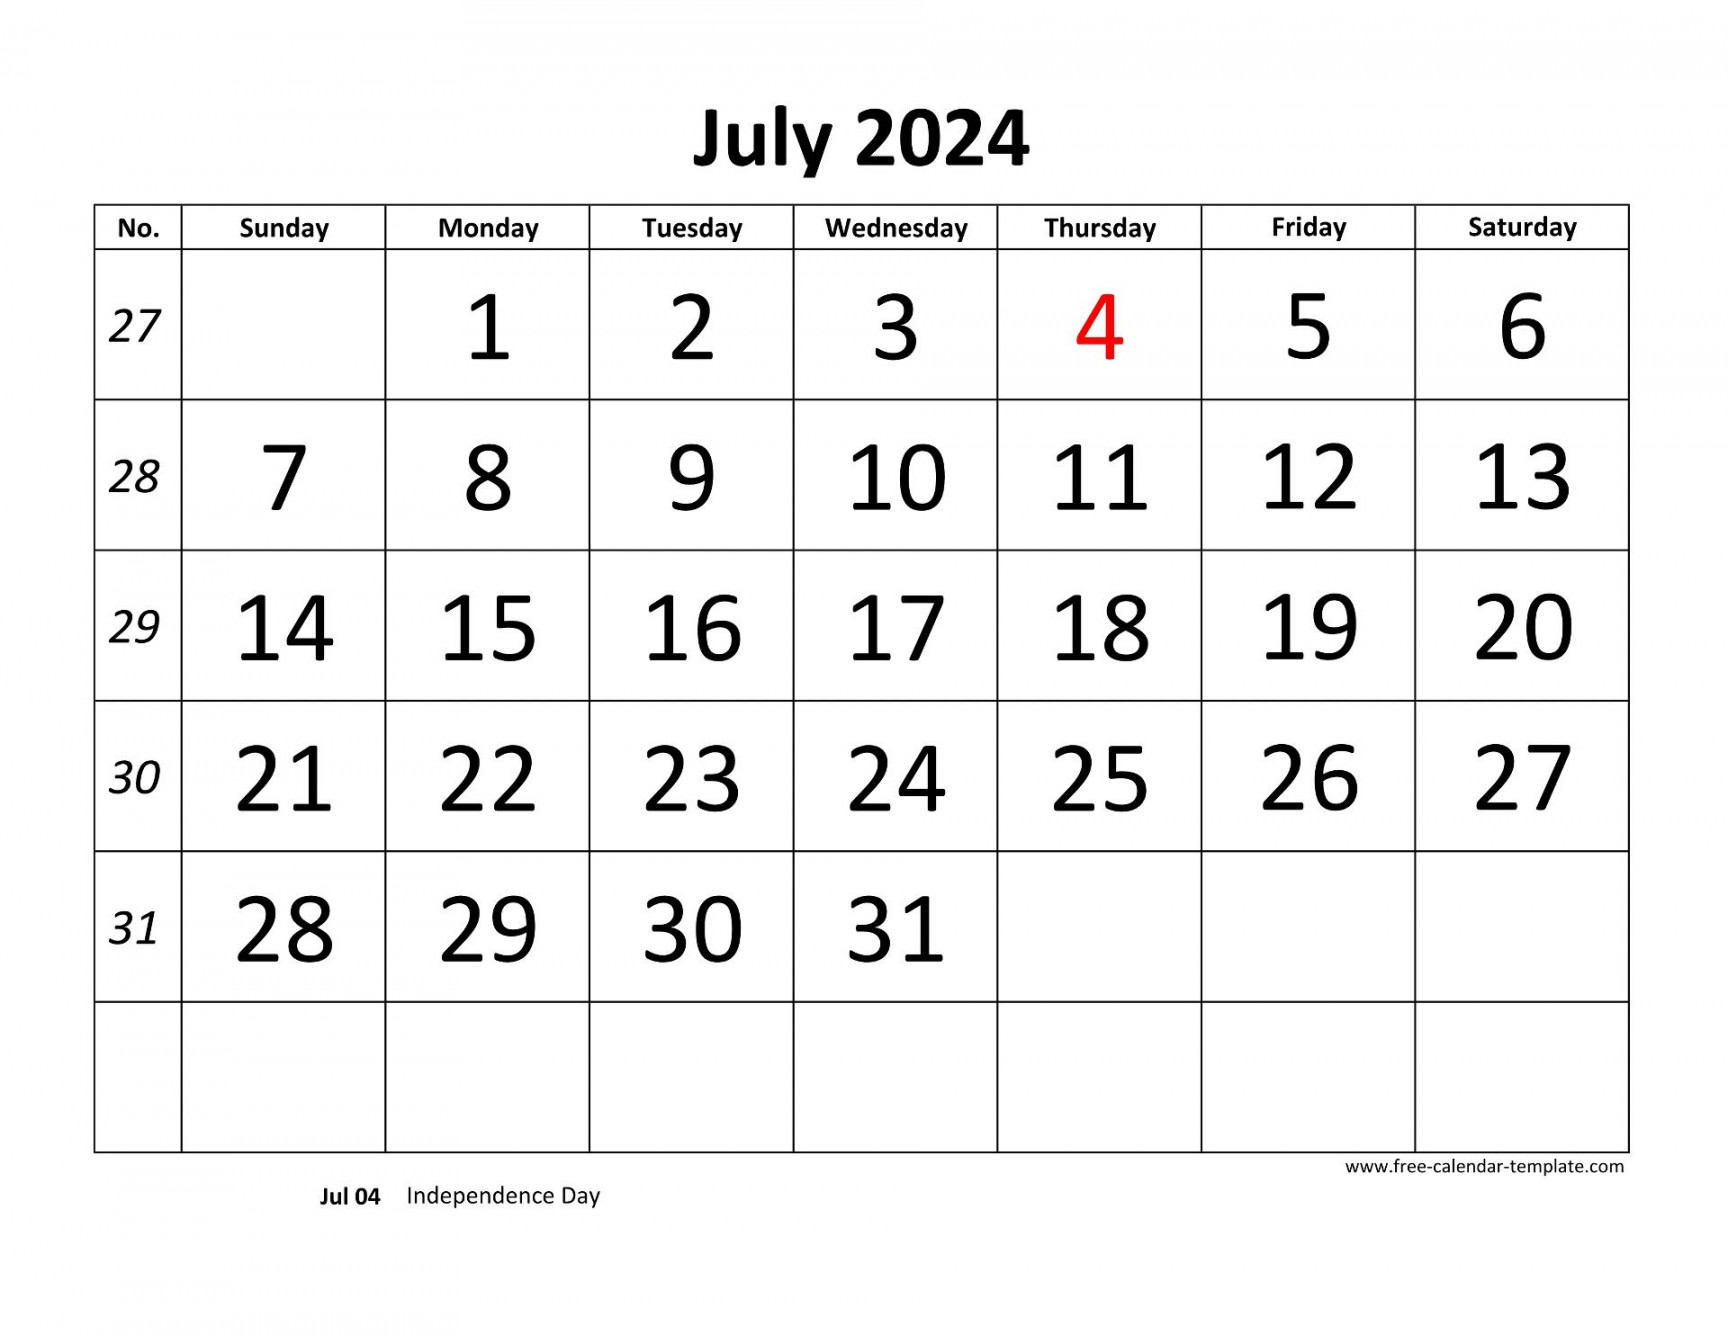 July  Free Calendar Tempplate  Free-calendar-template